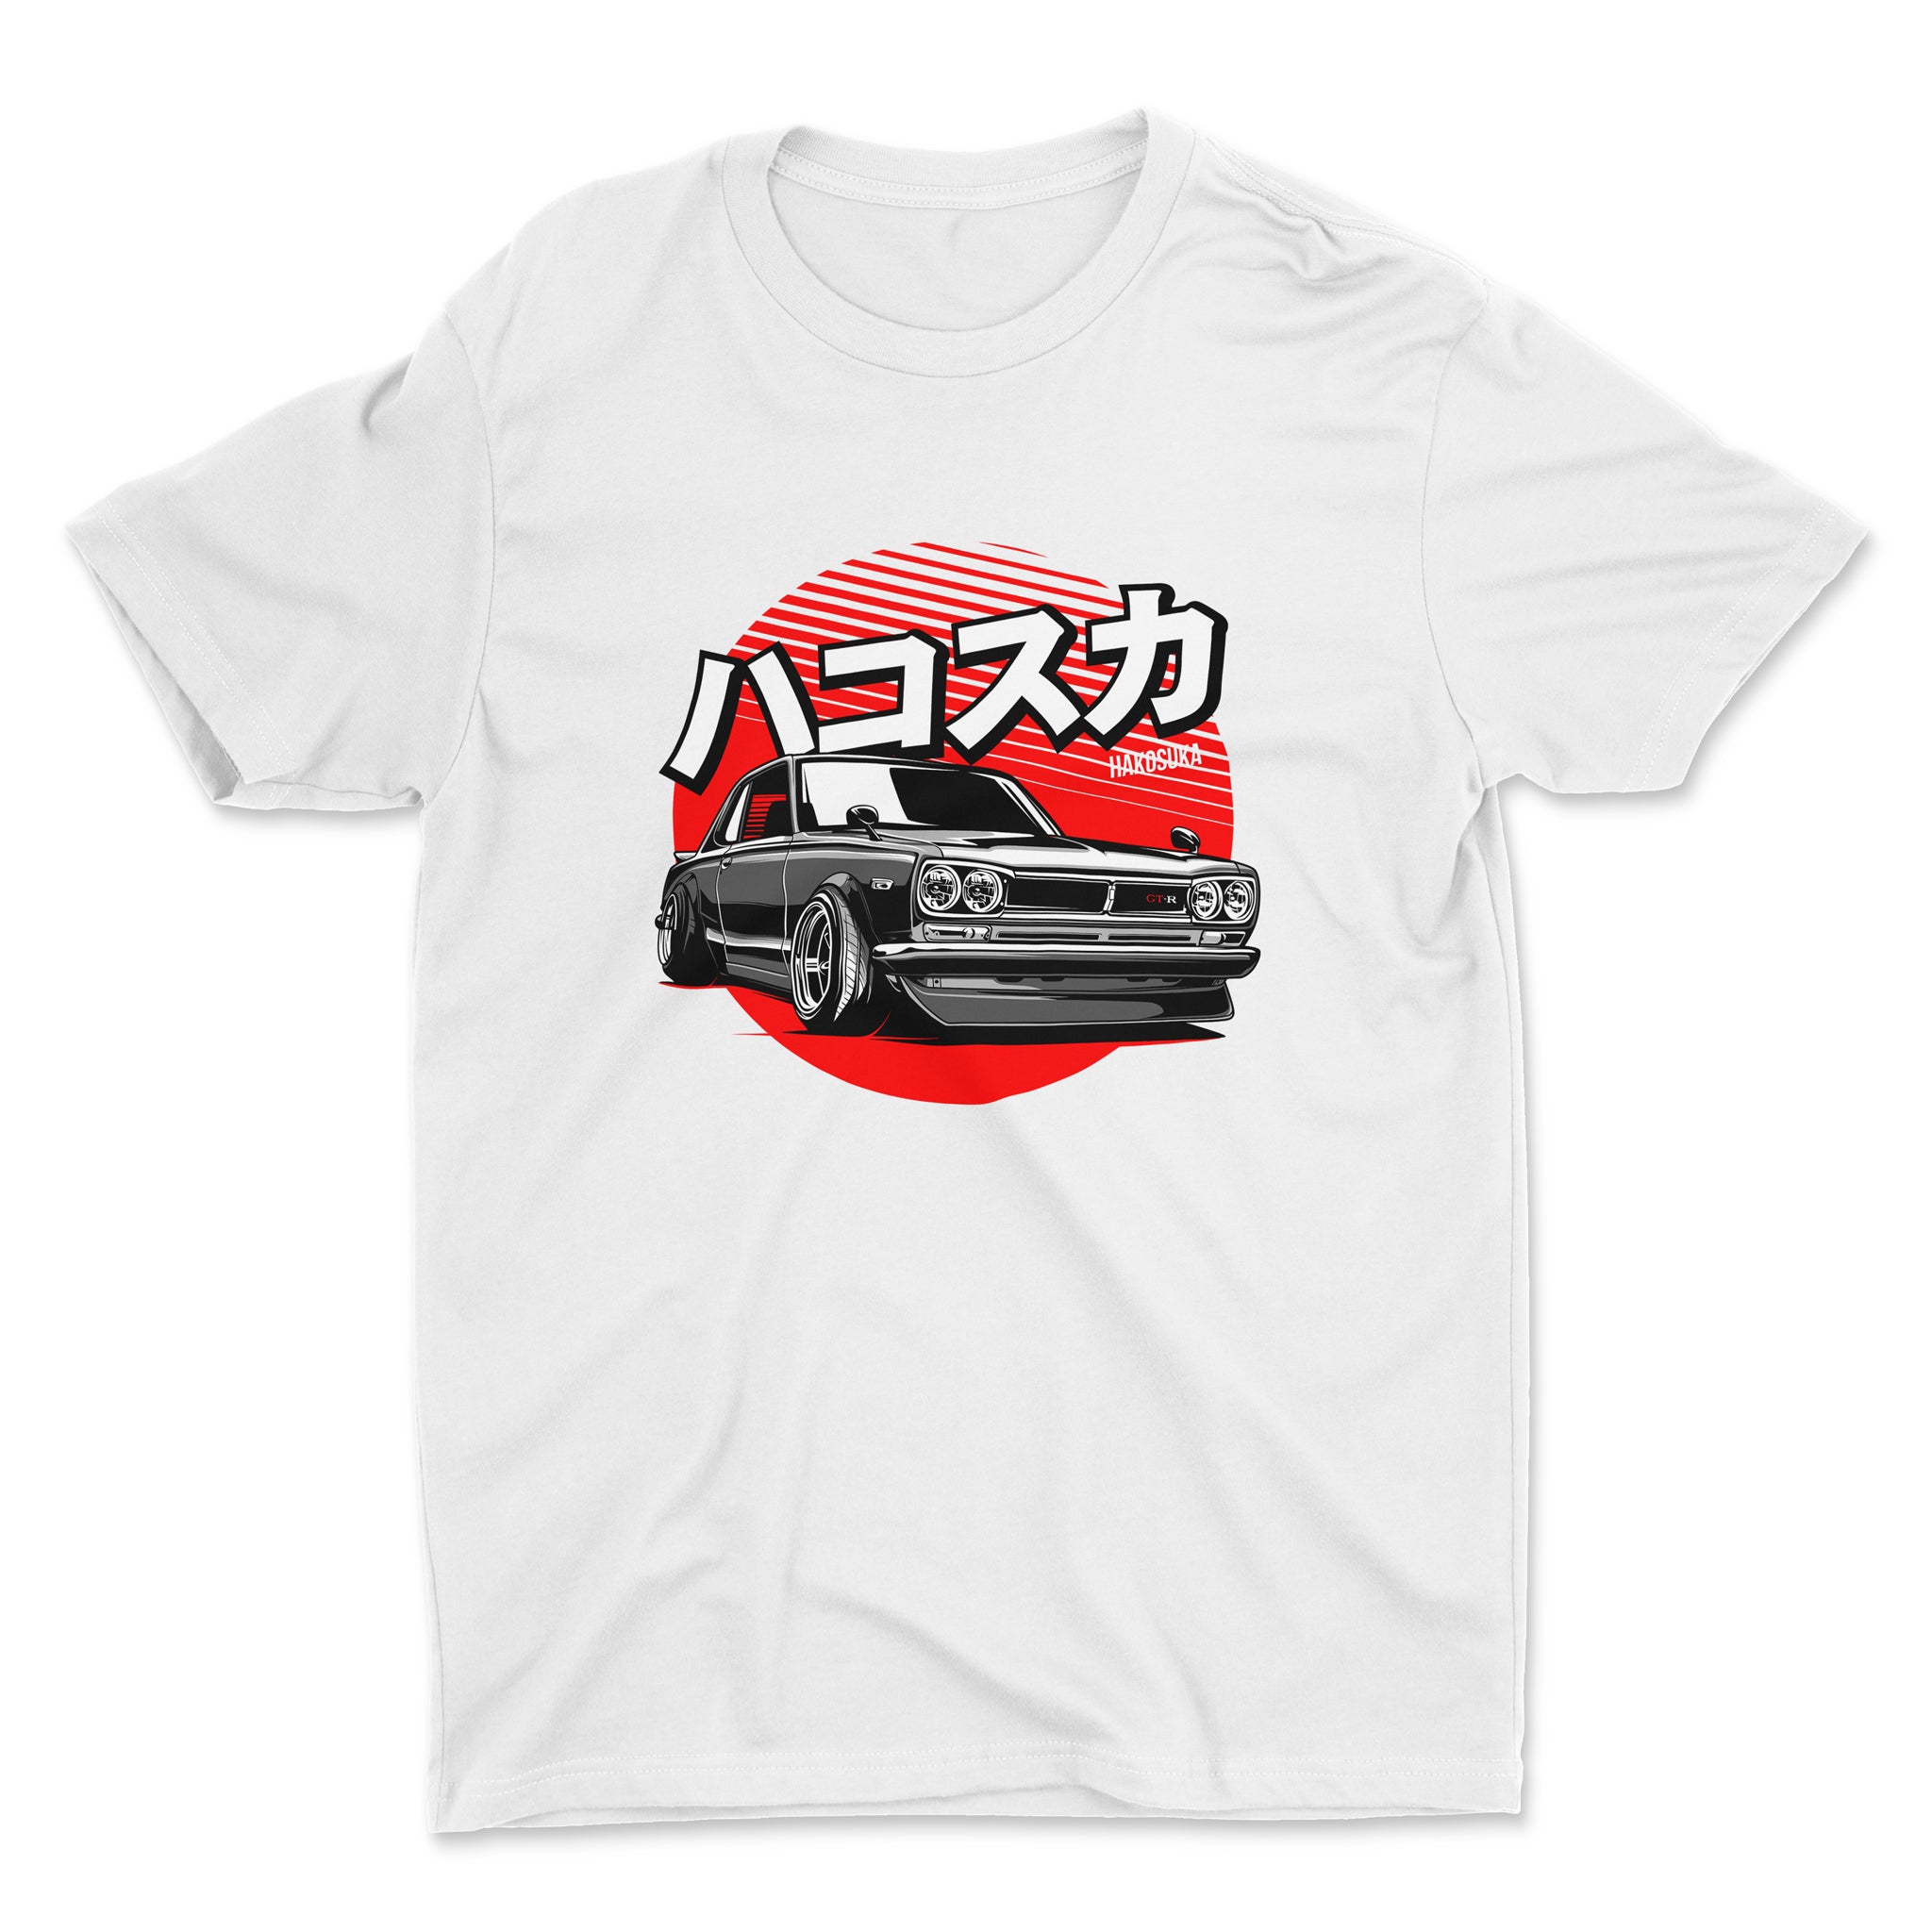 Nissan Skyline GTR Hakosuka - Car T-Shirt - White. Mockup.